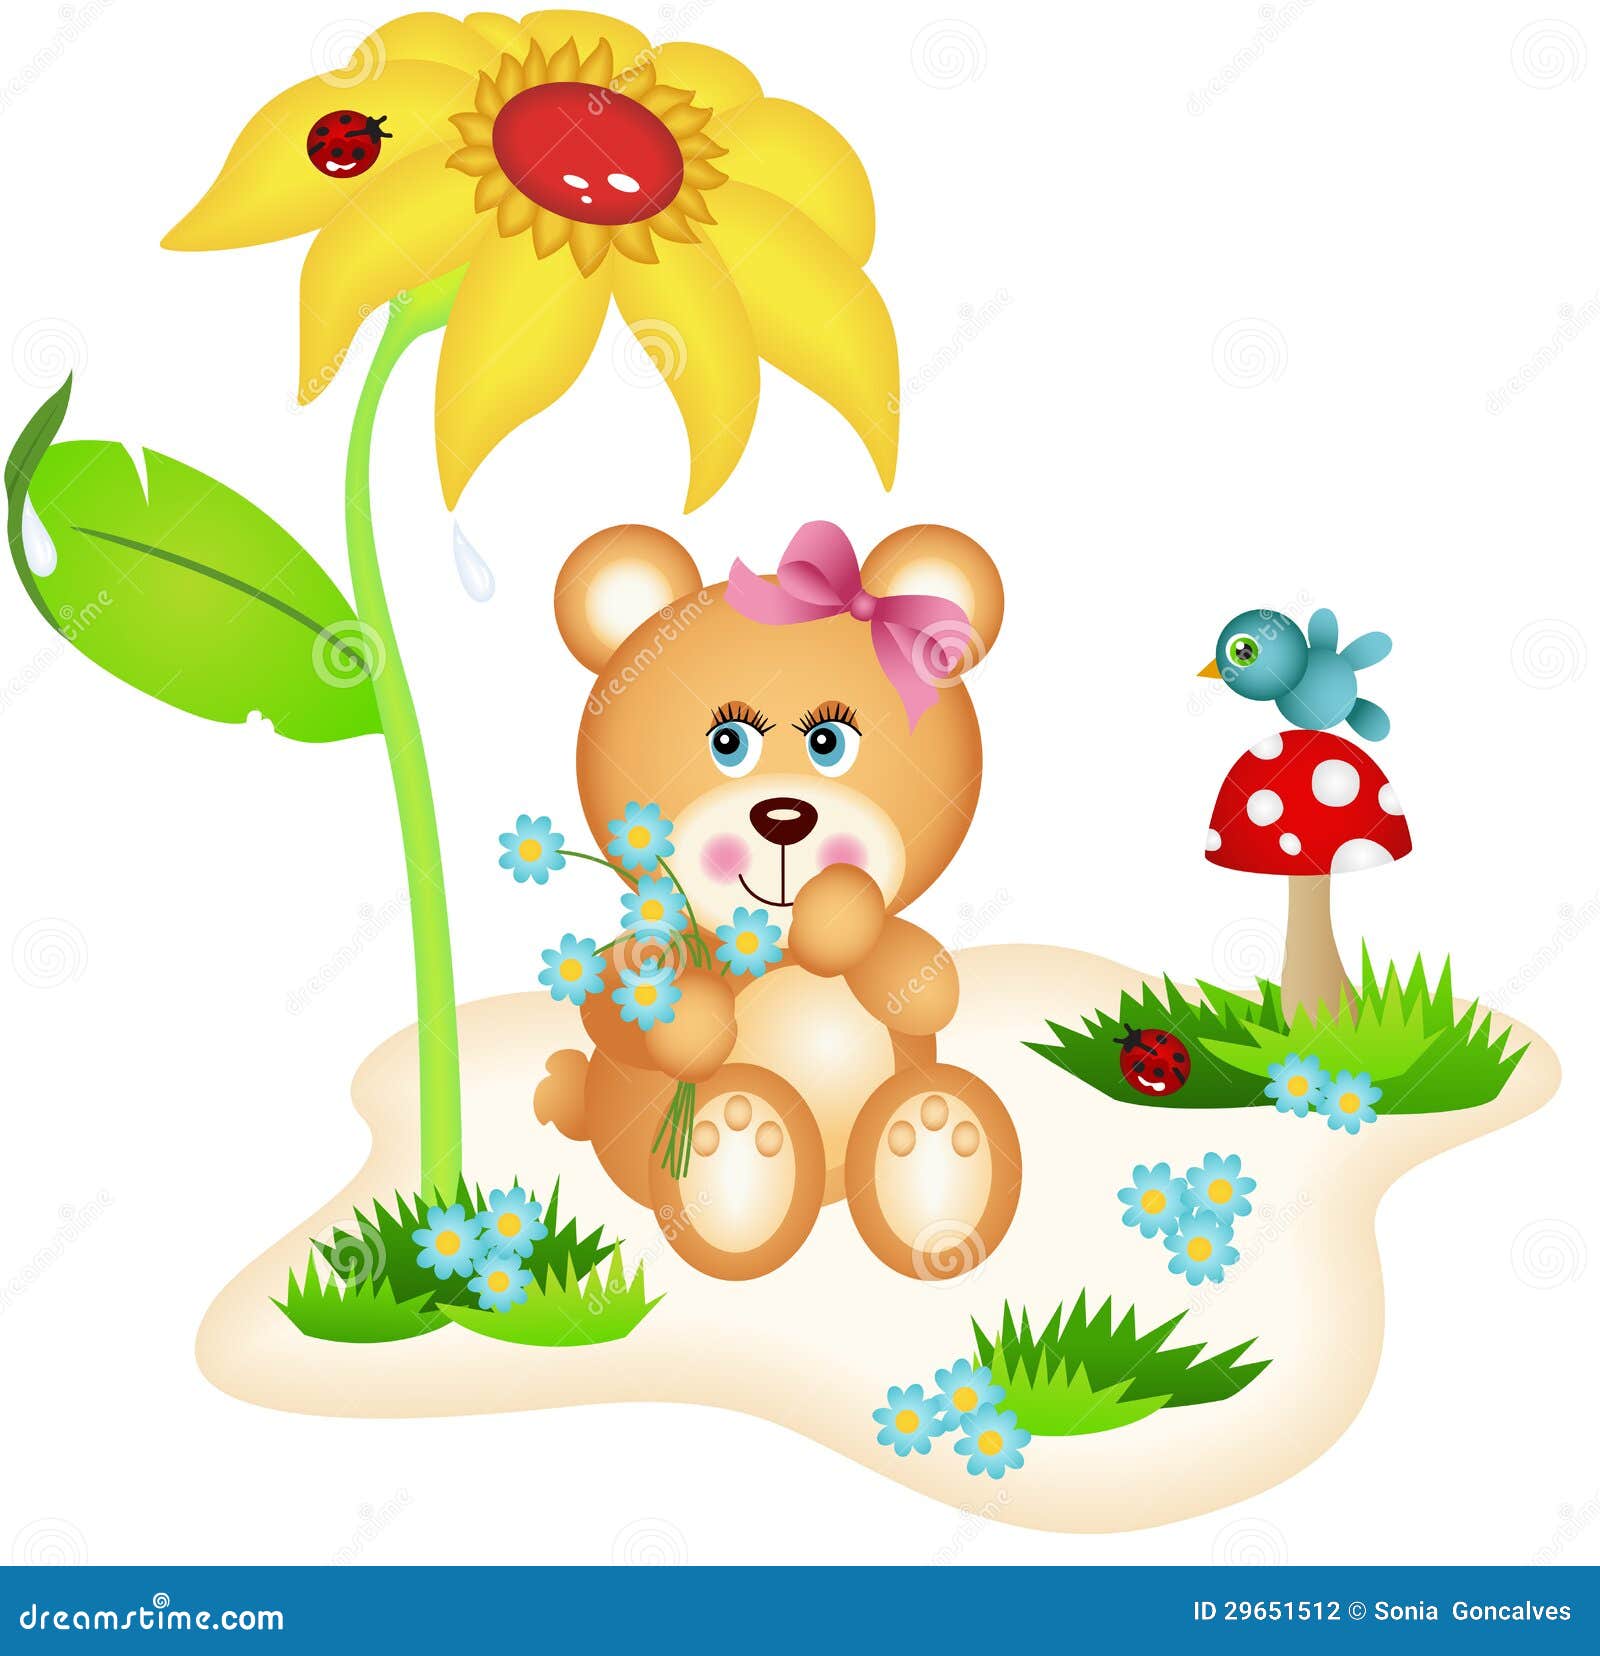 teddy bear with flowers clipart - photo #20